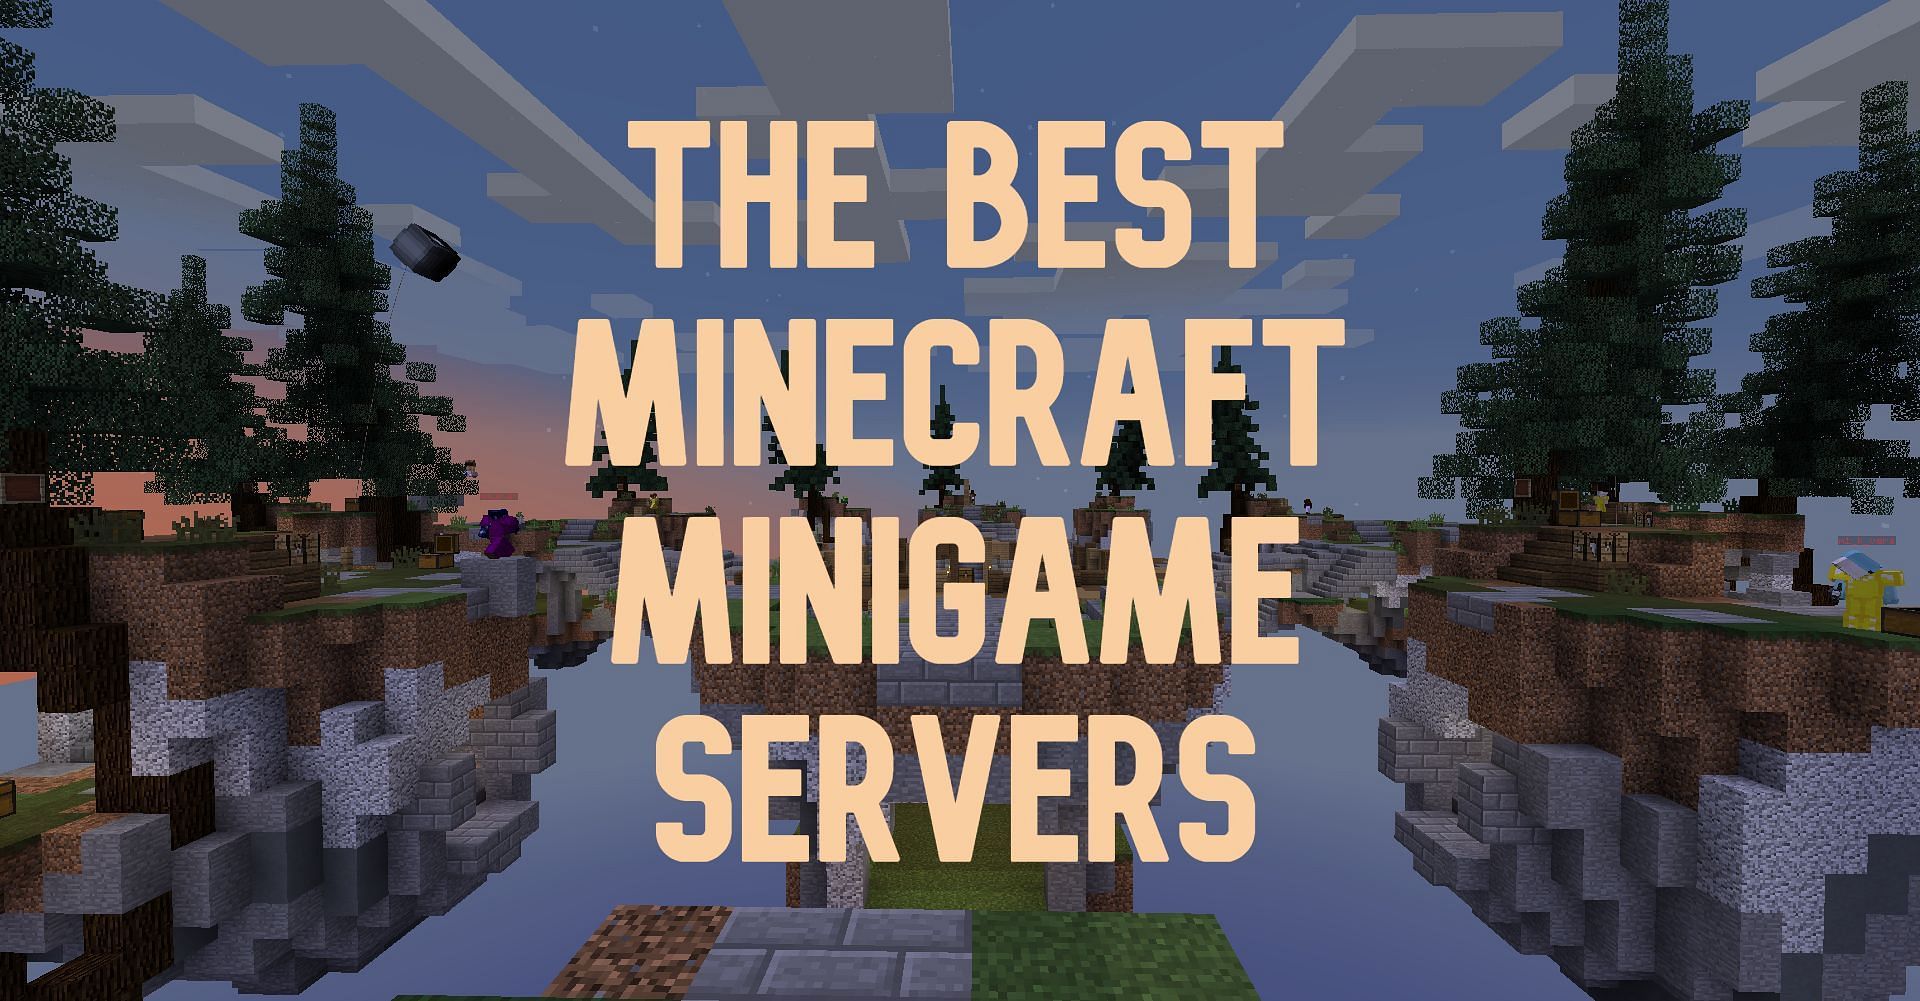 Minigame-oriented minecraft server